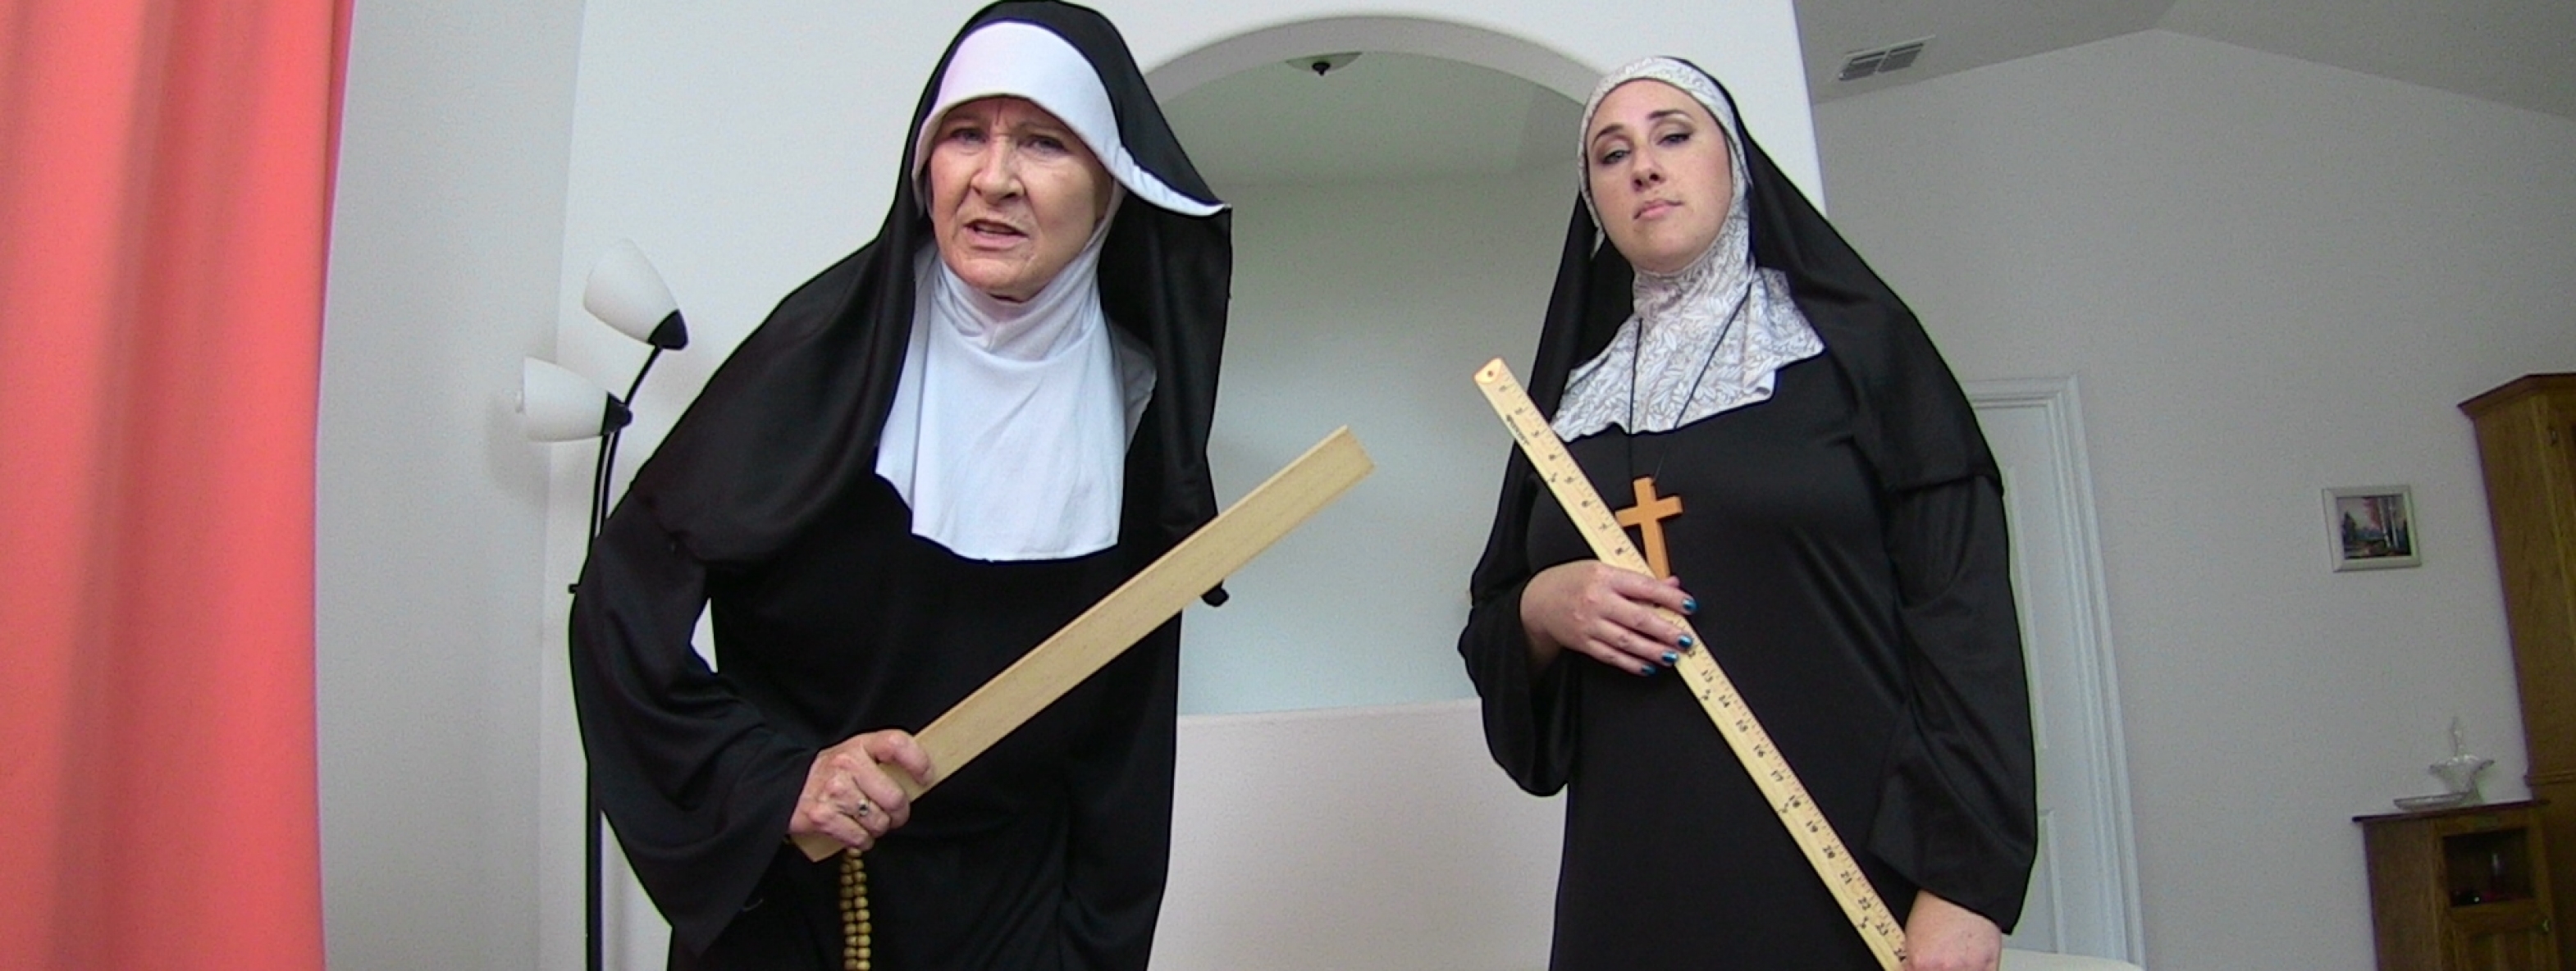 discipling_nuns